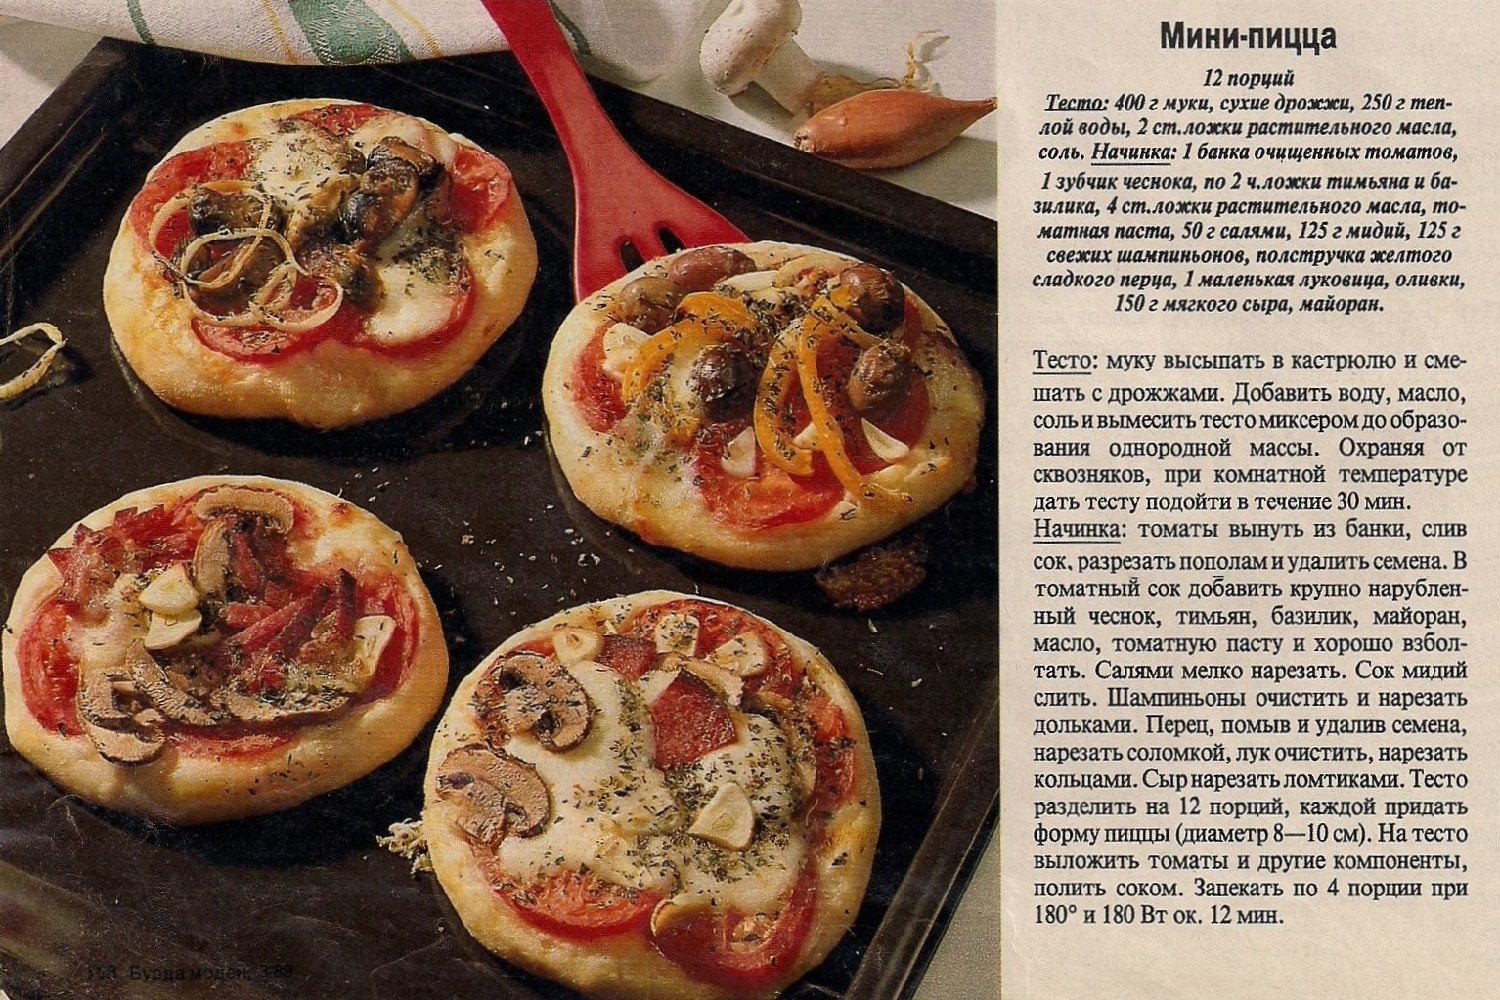 начинка для мини пиццы в домашних условиях в духовке с фото (120) фото